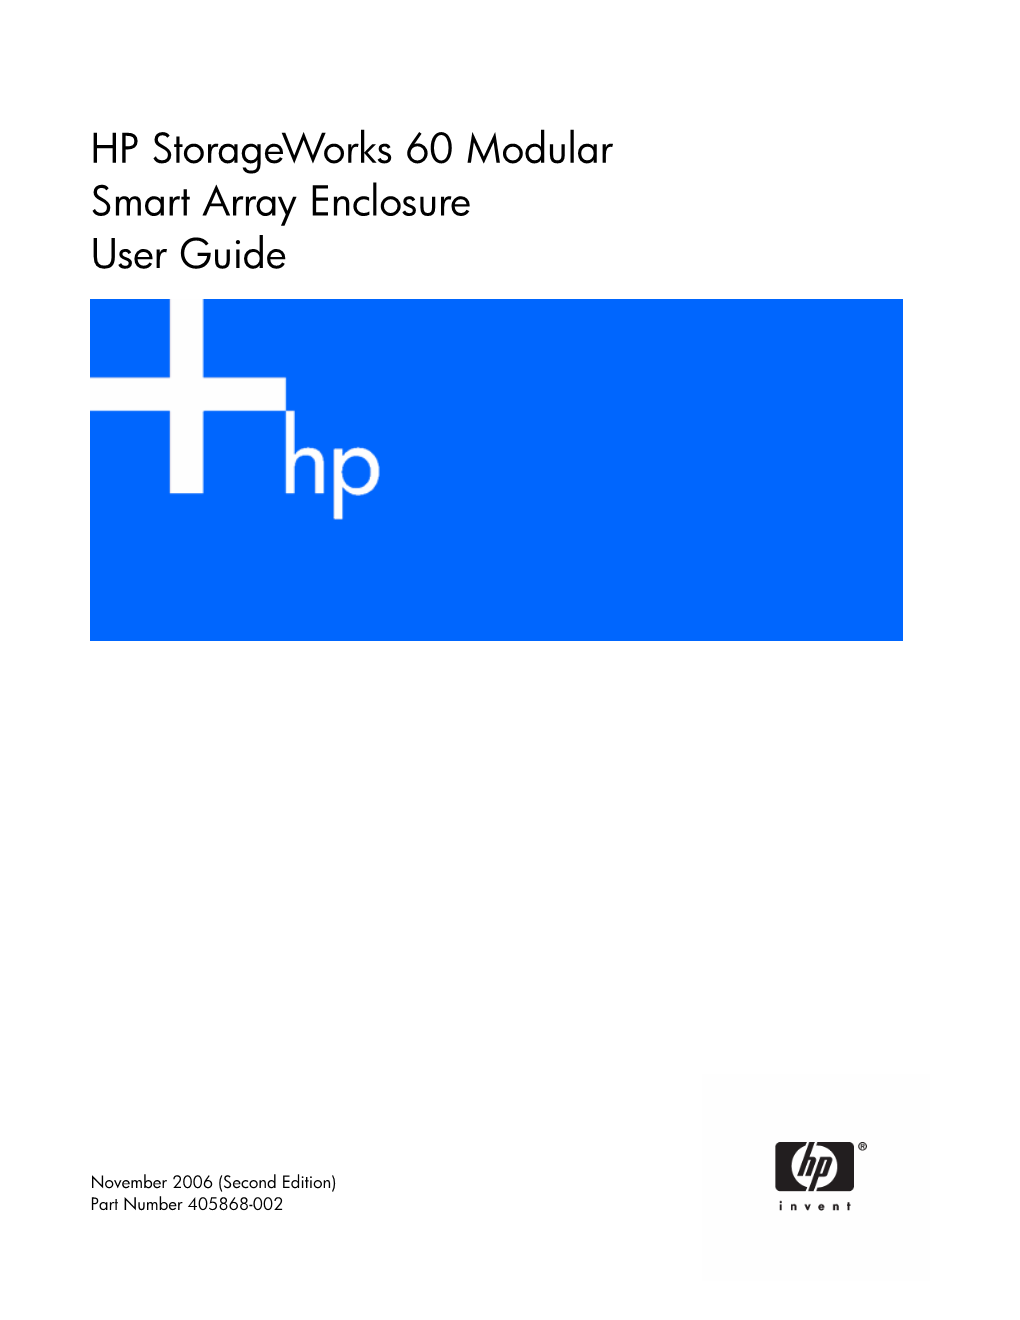 HP Storageworks 60 Modular Smart Array Enclosure User Guide